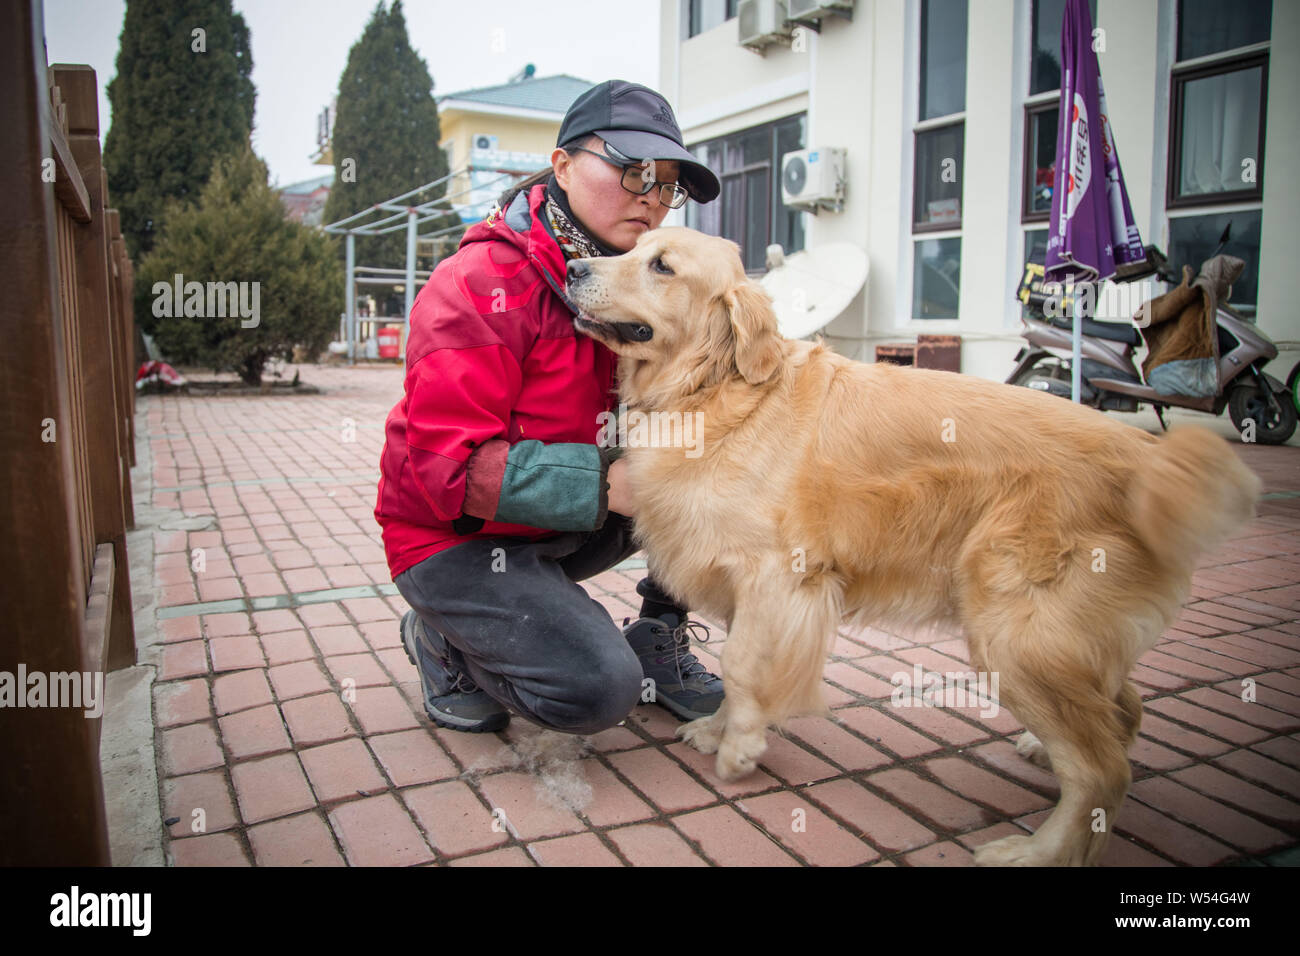 Chinesischen Führer Hundetrainer Wang Xin, die mit einem Doktorat in Psychologie an einer Universität in Japan studiert, sieht nach einem blindenhund an der Ausbildung b Stockfoto